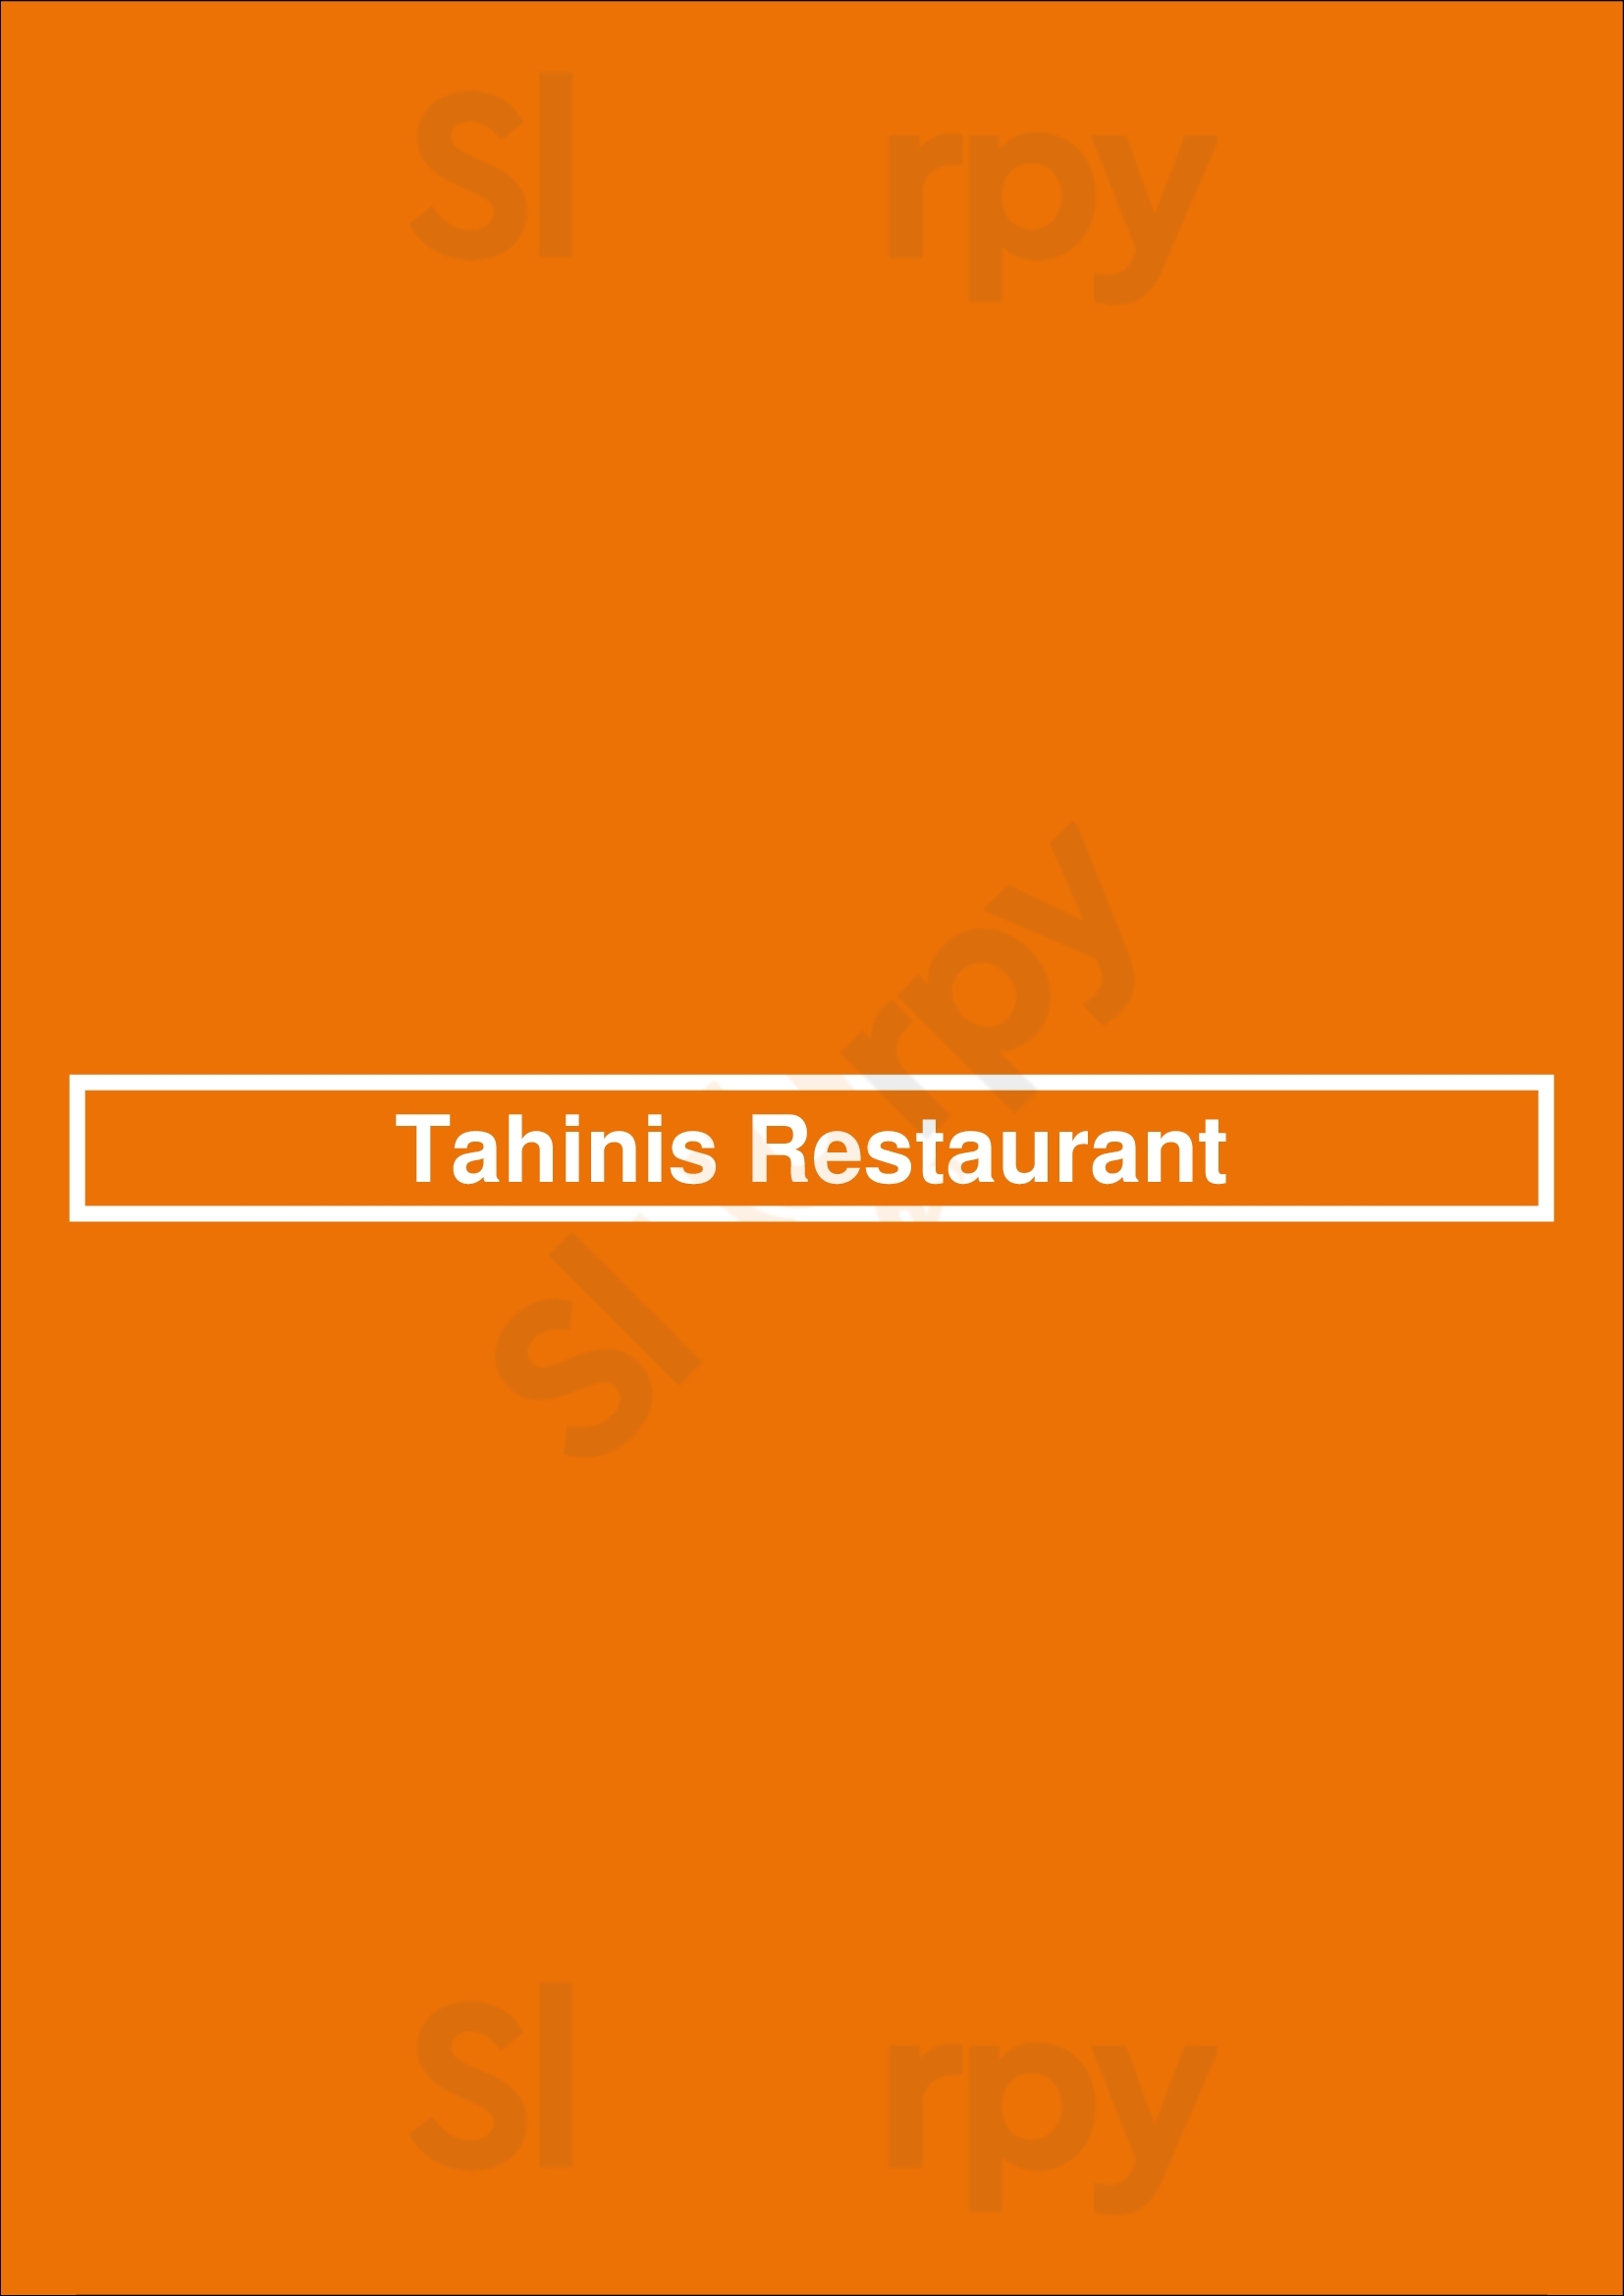 Tahinis Restaurant (richmond St) London Menu - 1